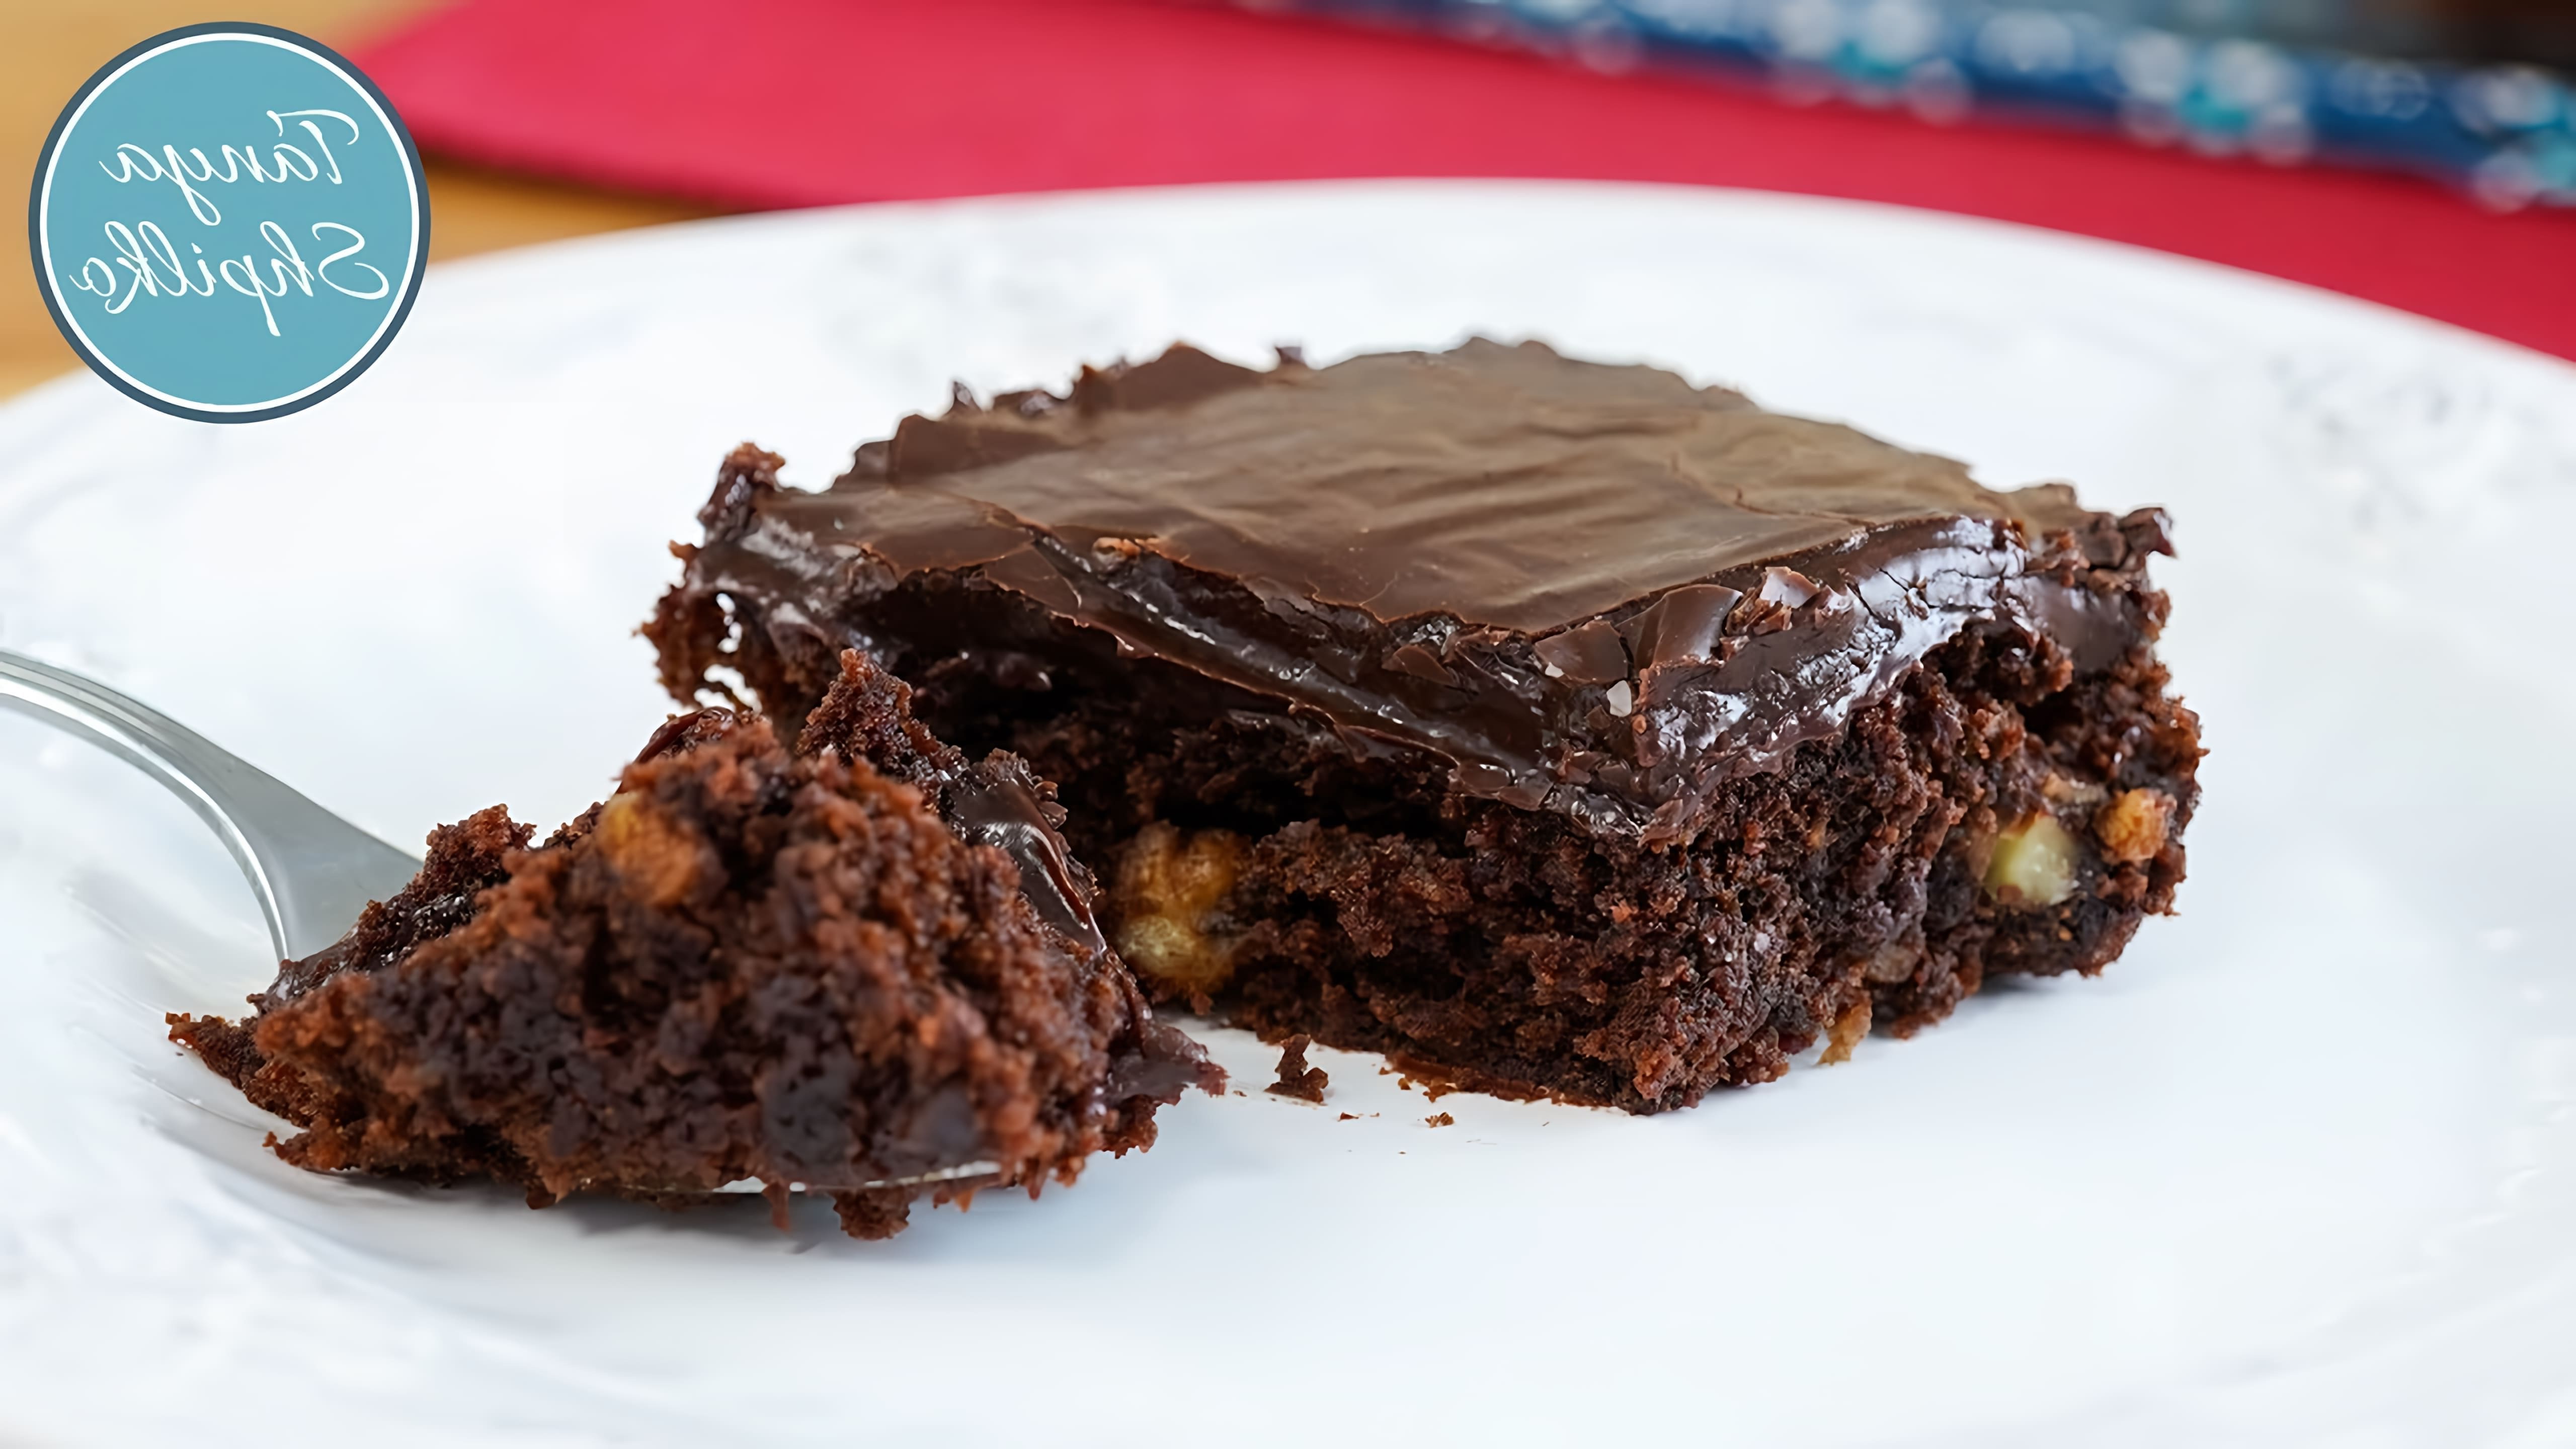 В этом видео демонстрируется рецепт быстрого шоколадного пирога с орехами, который не содержит сливок и кофе